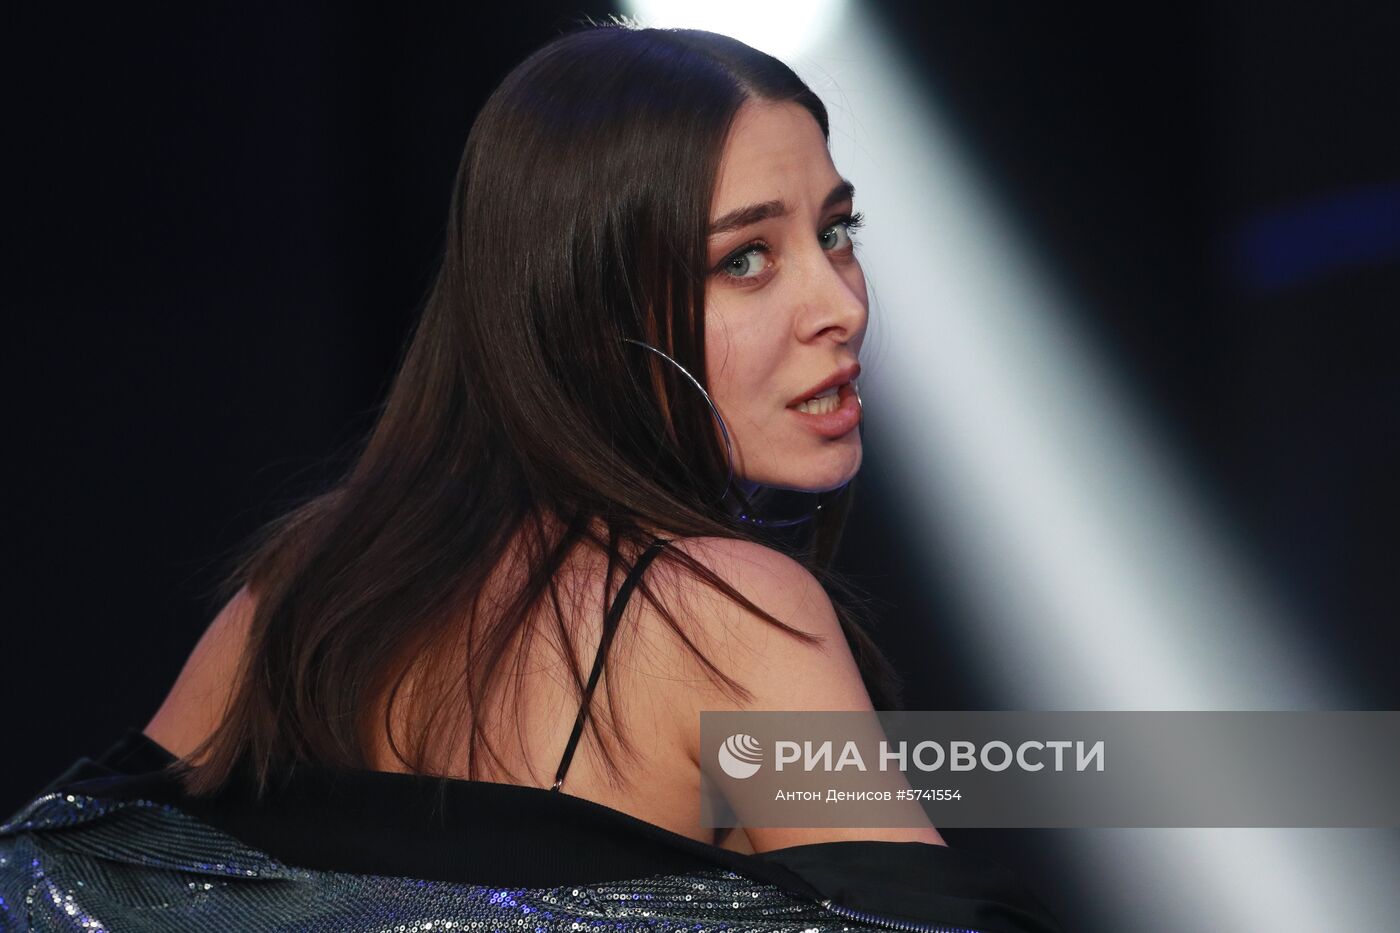 Конкурс красоты «Мисс Москва 2018»